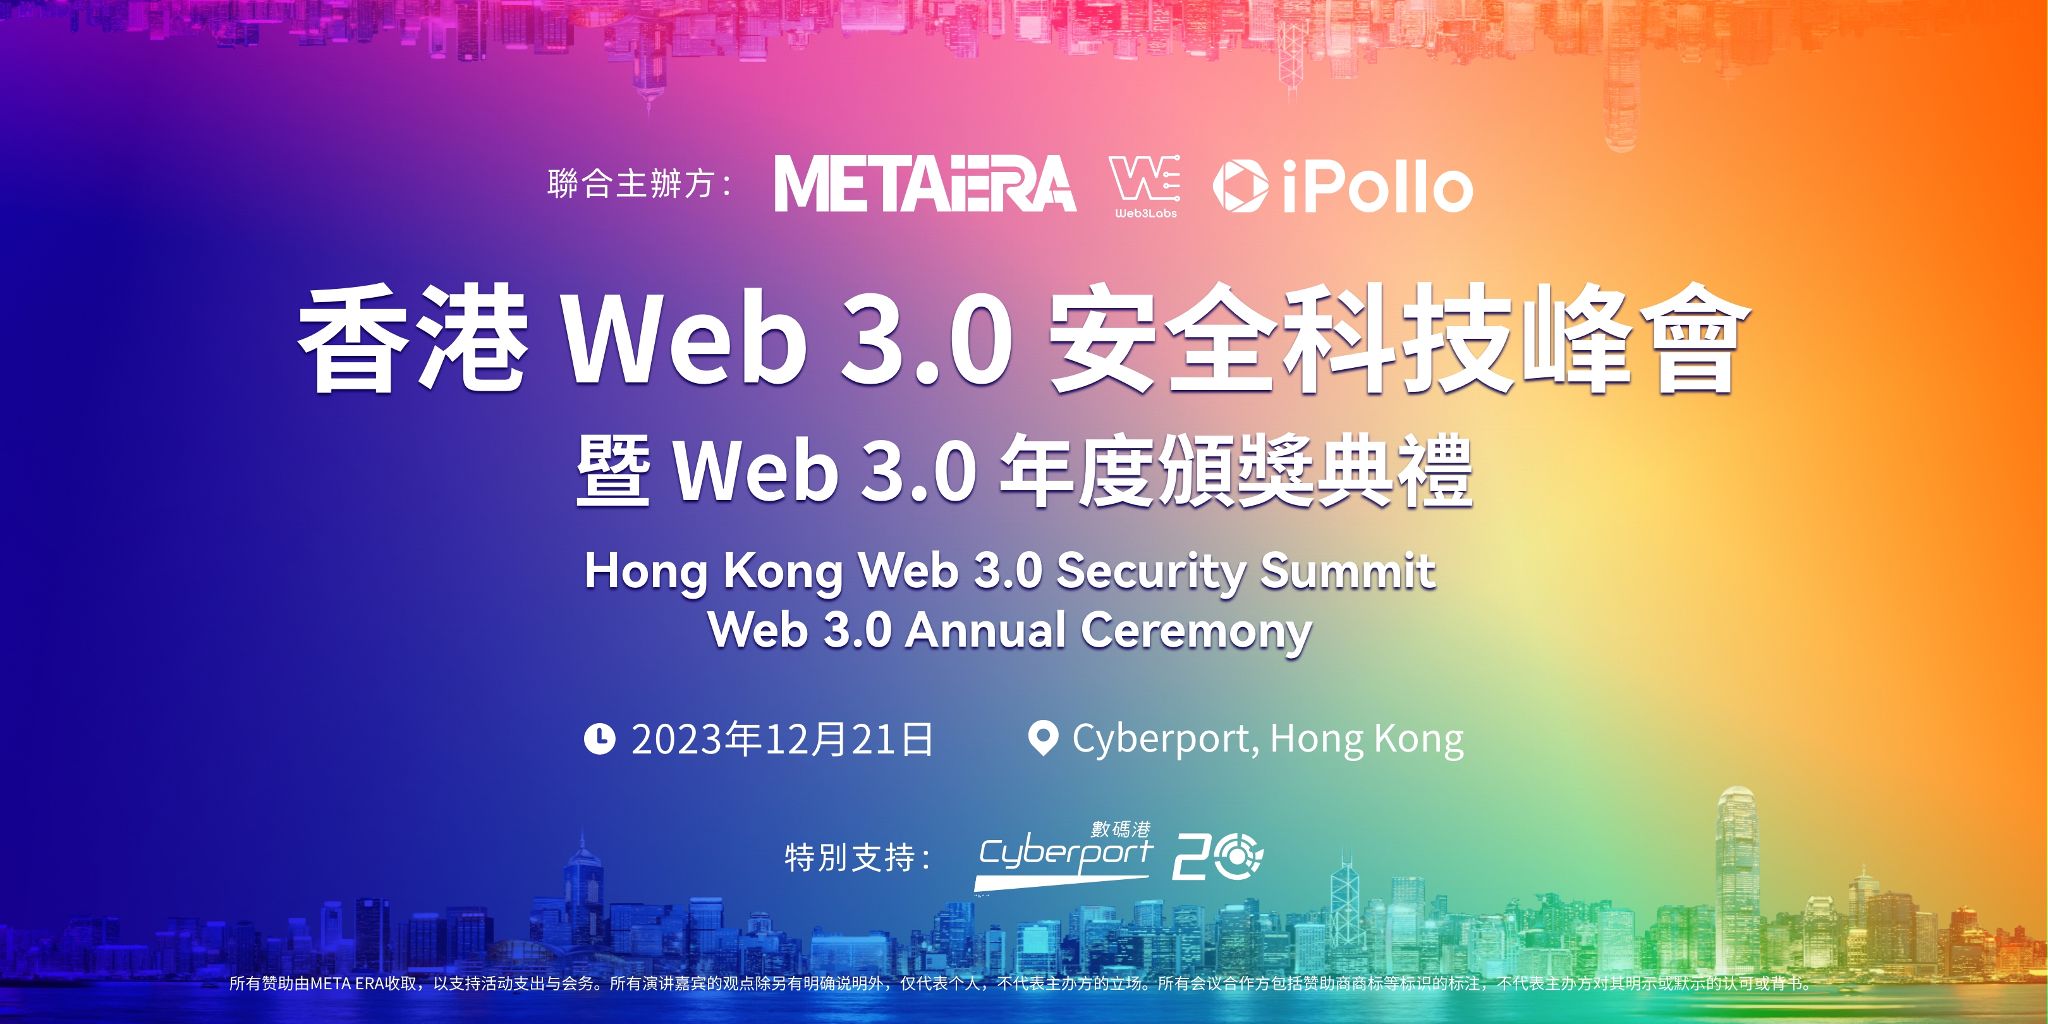 财政司司长陈茂波、数码港主席陈细明确认出席香港首届「 Web 3.0 安全科技峰会 —— 暨 Web 3.0 年度颁奖典